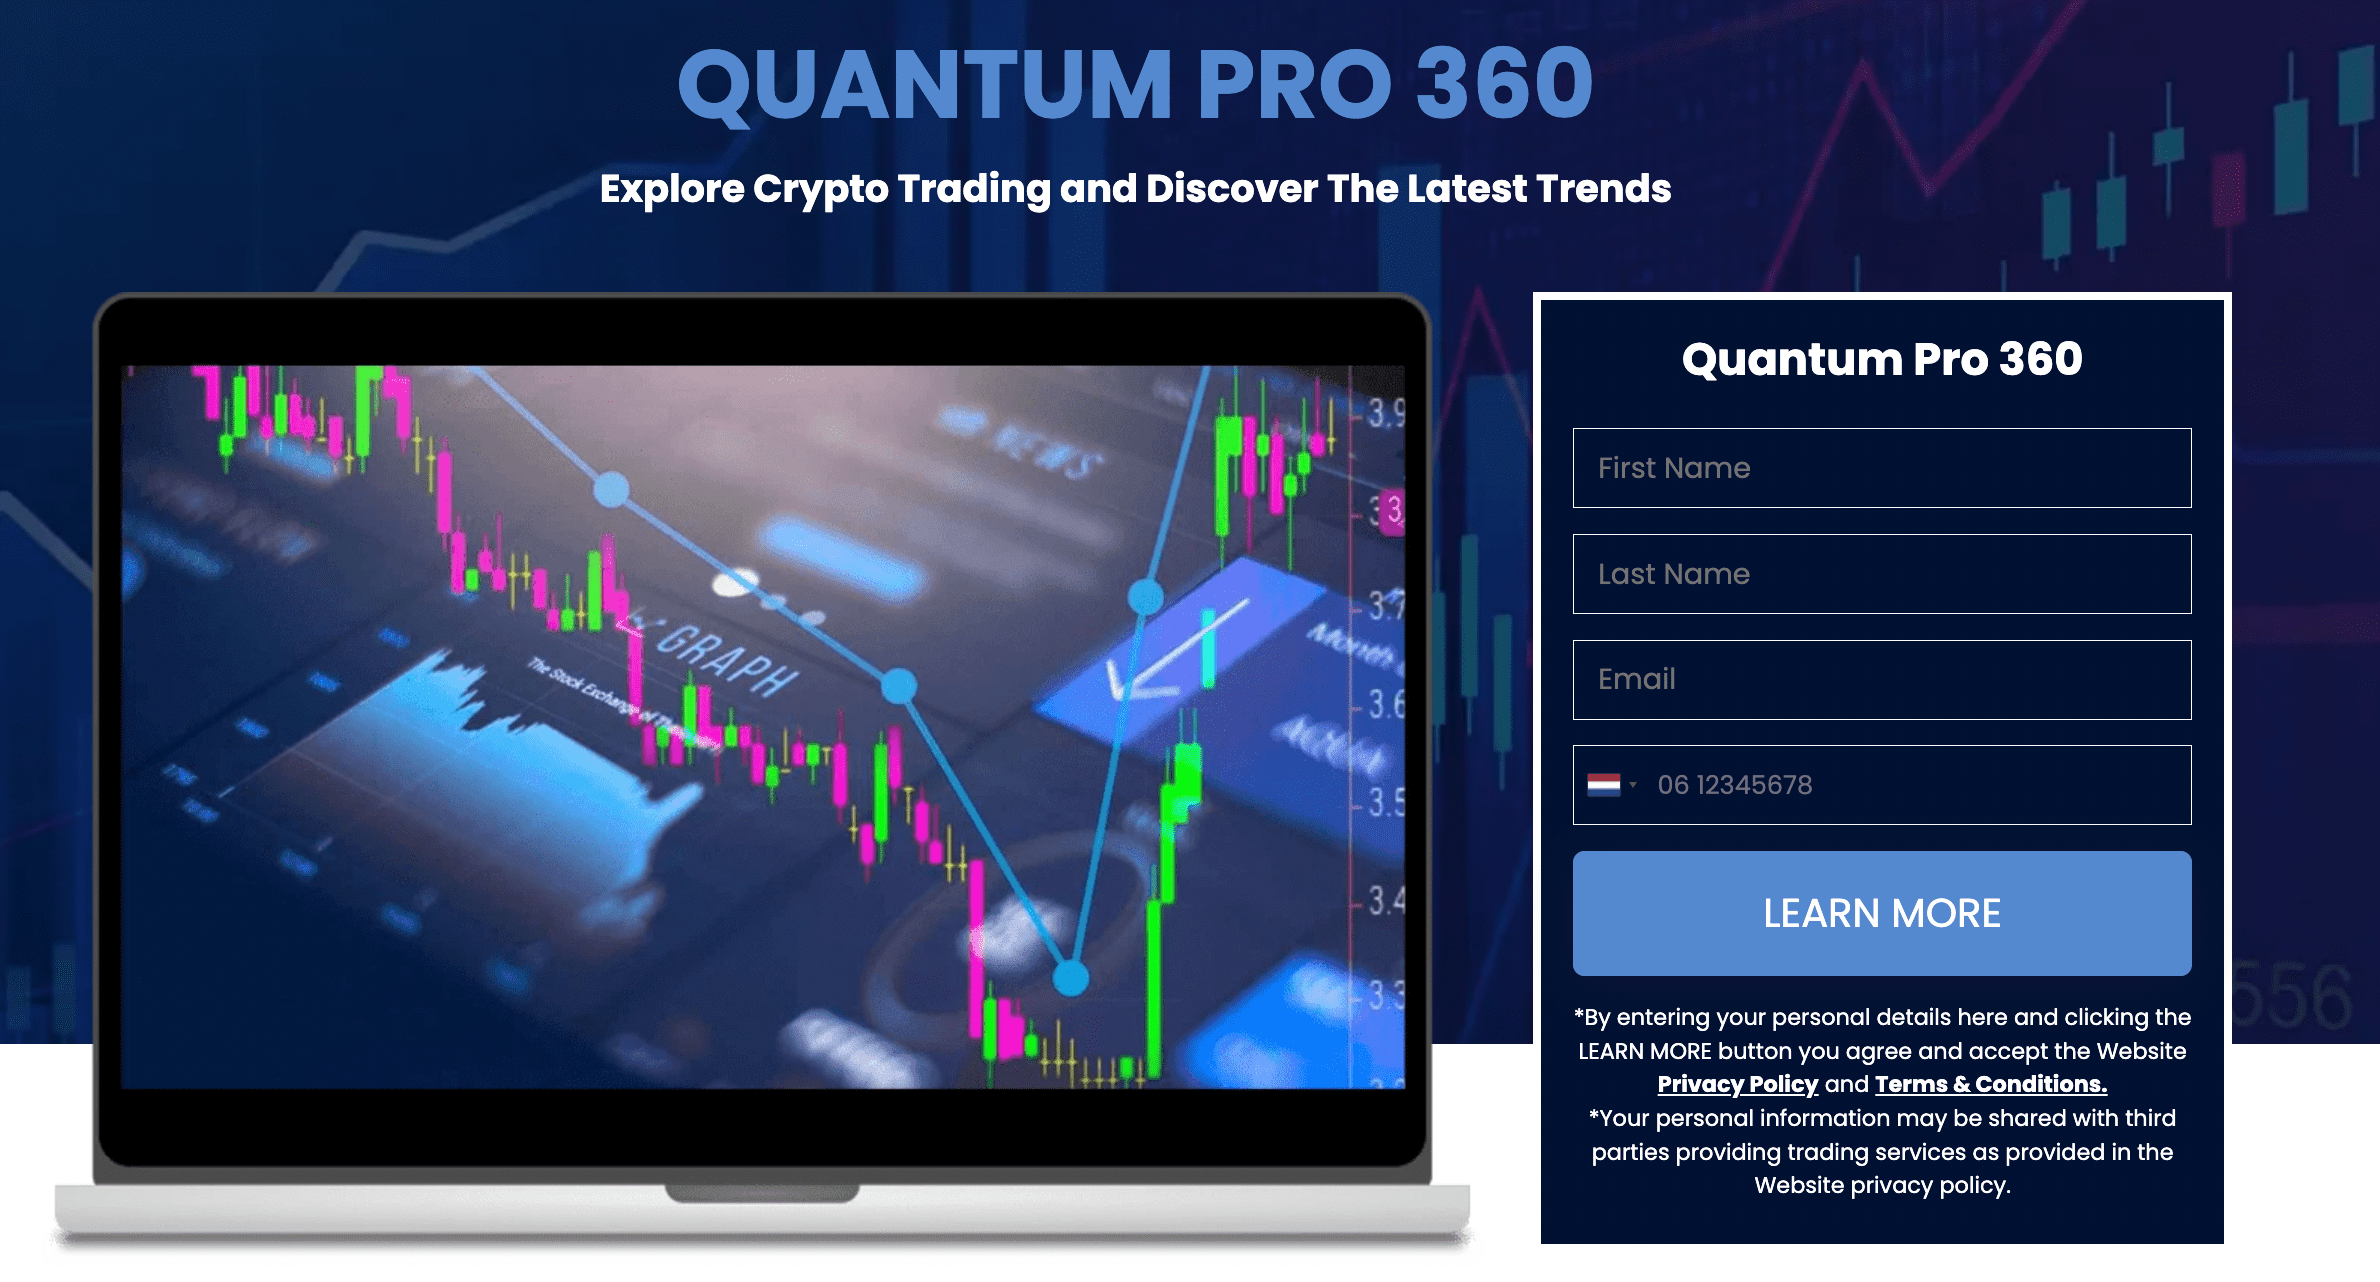 Quantum Pro 360 main image.